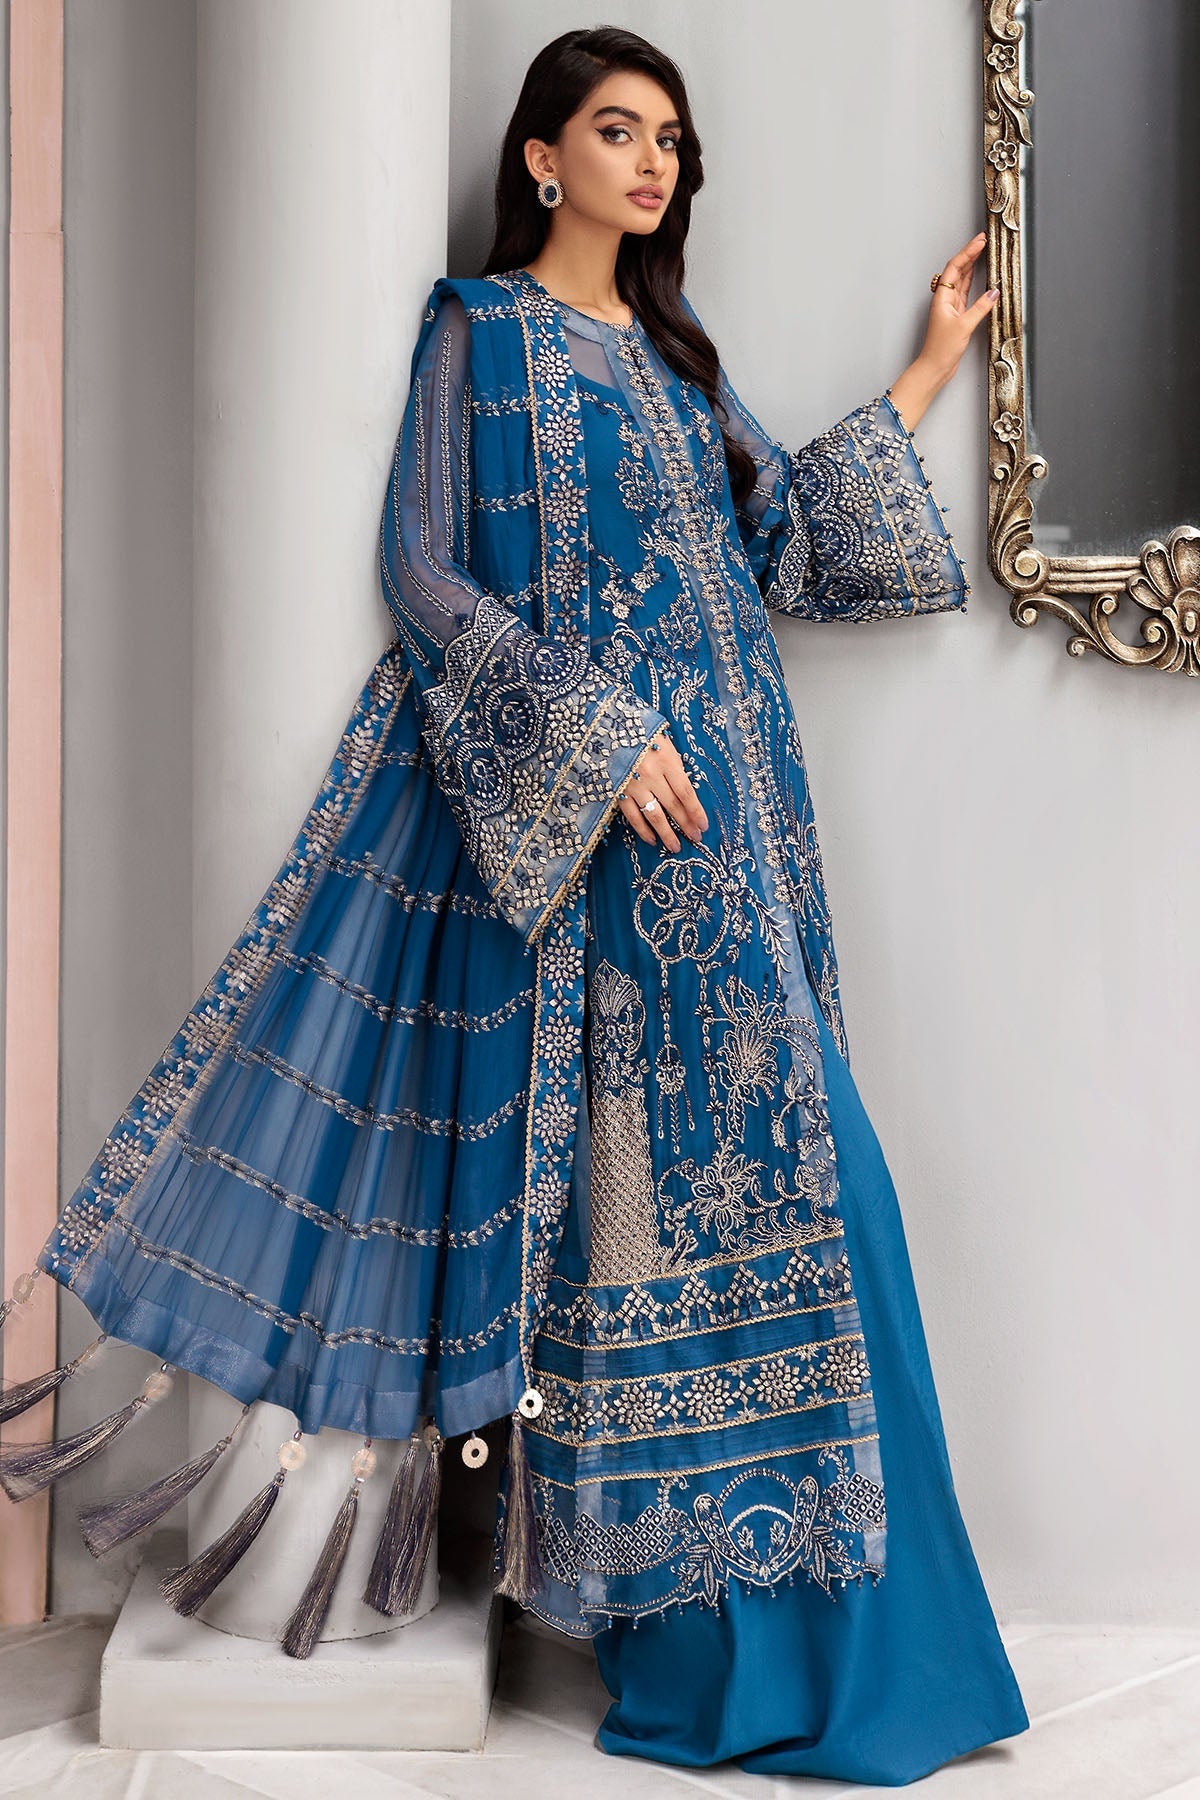 Blue Pakistani Salwar Kameez in Premium Chiffon Fabric – Nameera by Farooq